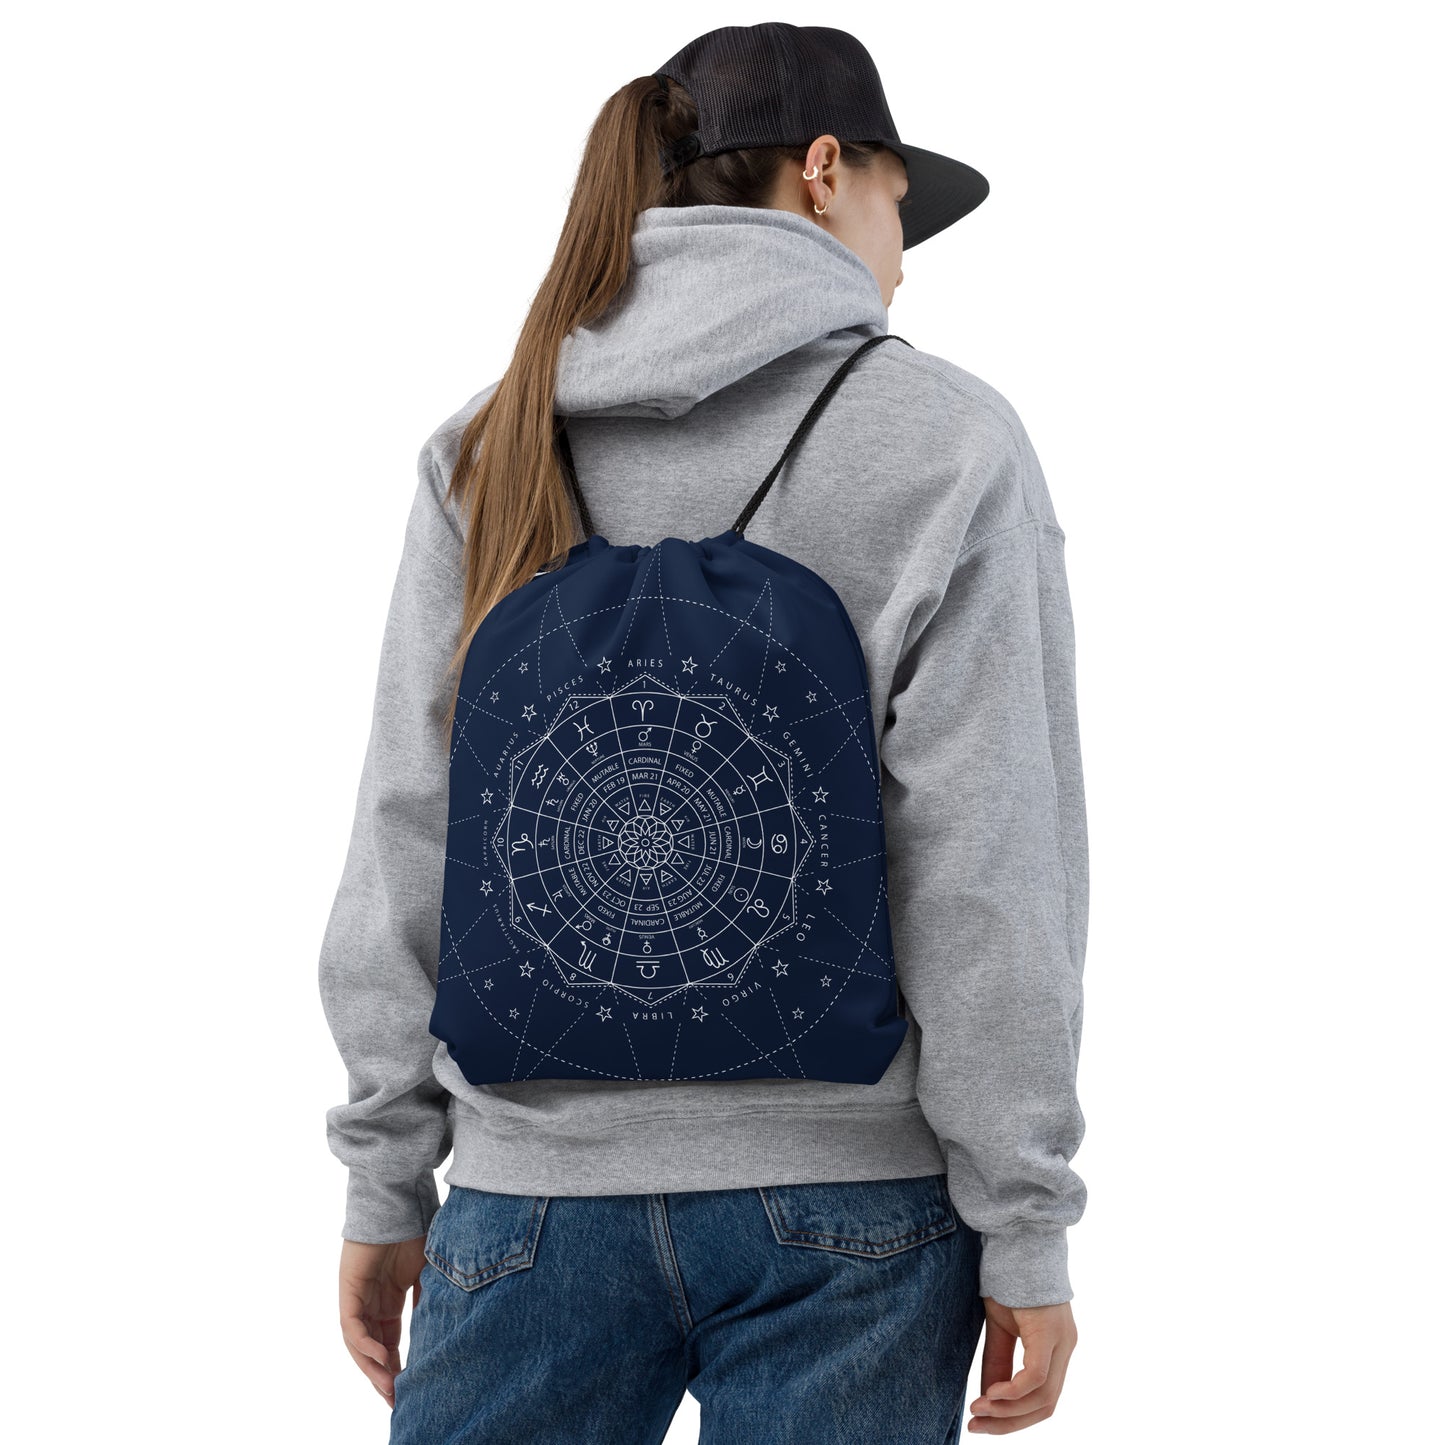 Drawstring bag Astrology kudrylab